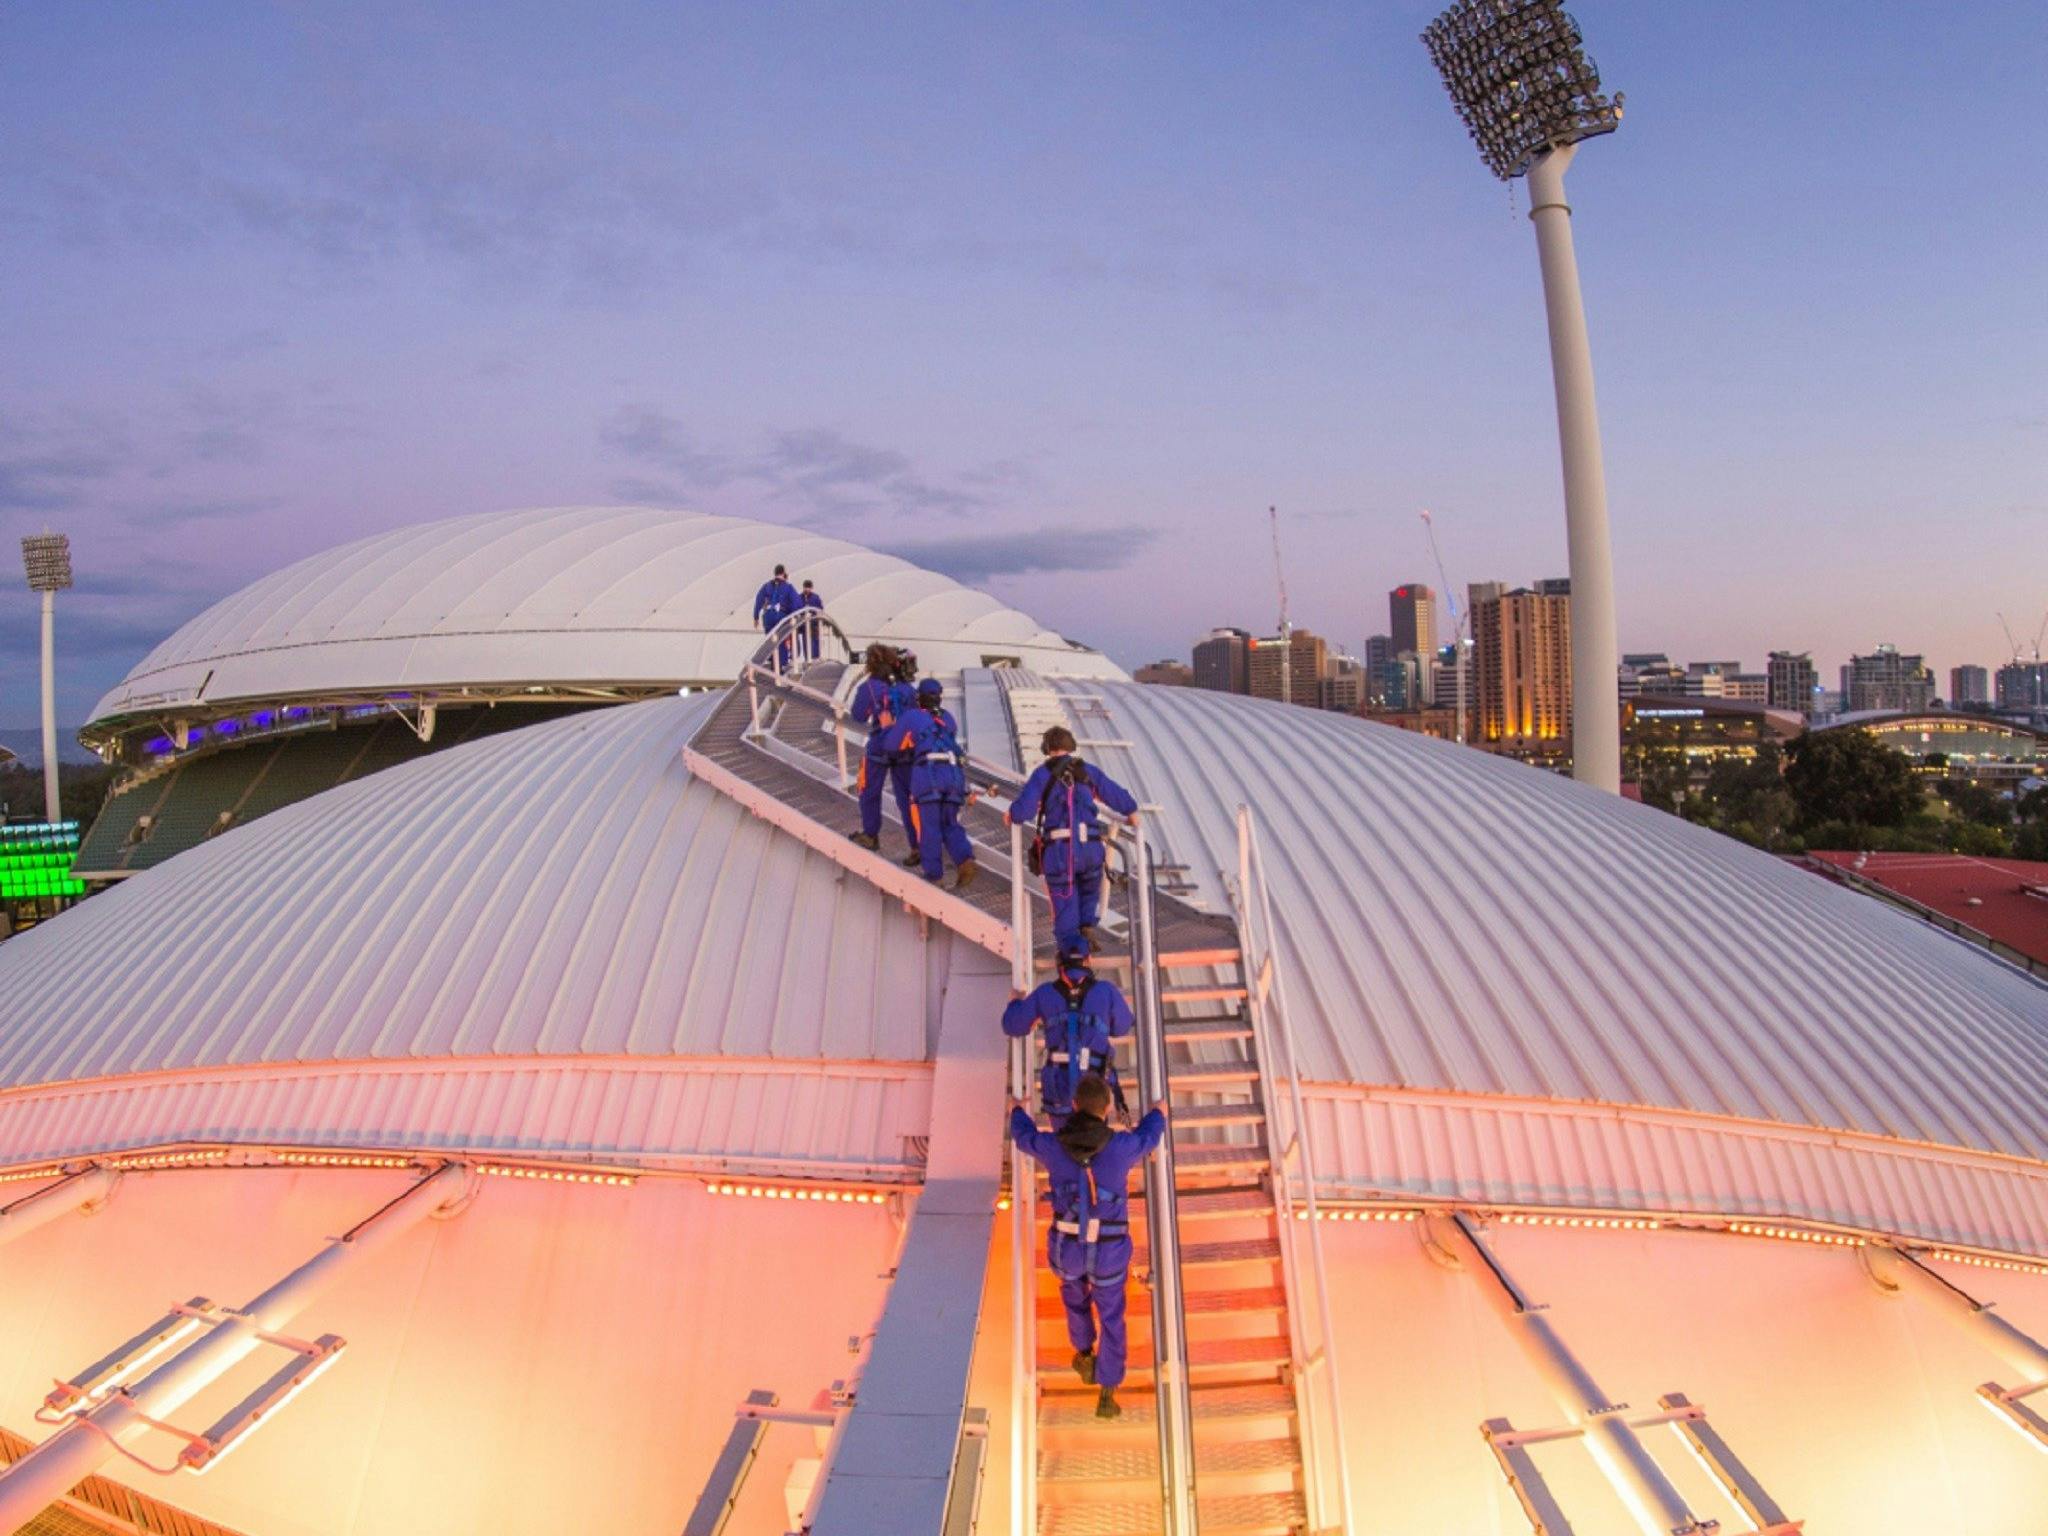 RoofClimb Adelaide Oval Slider Image 8